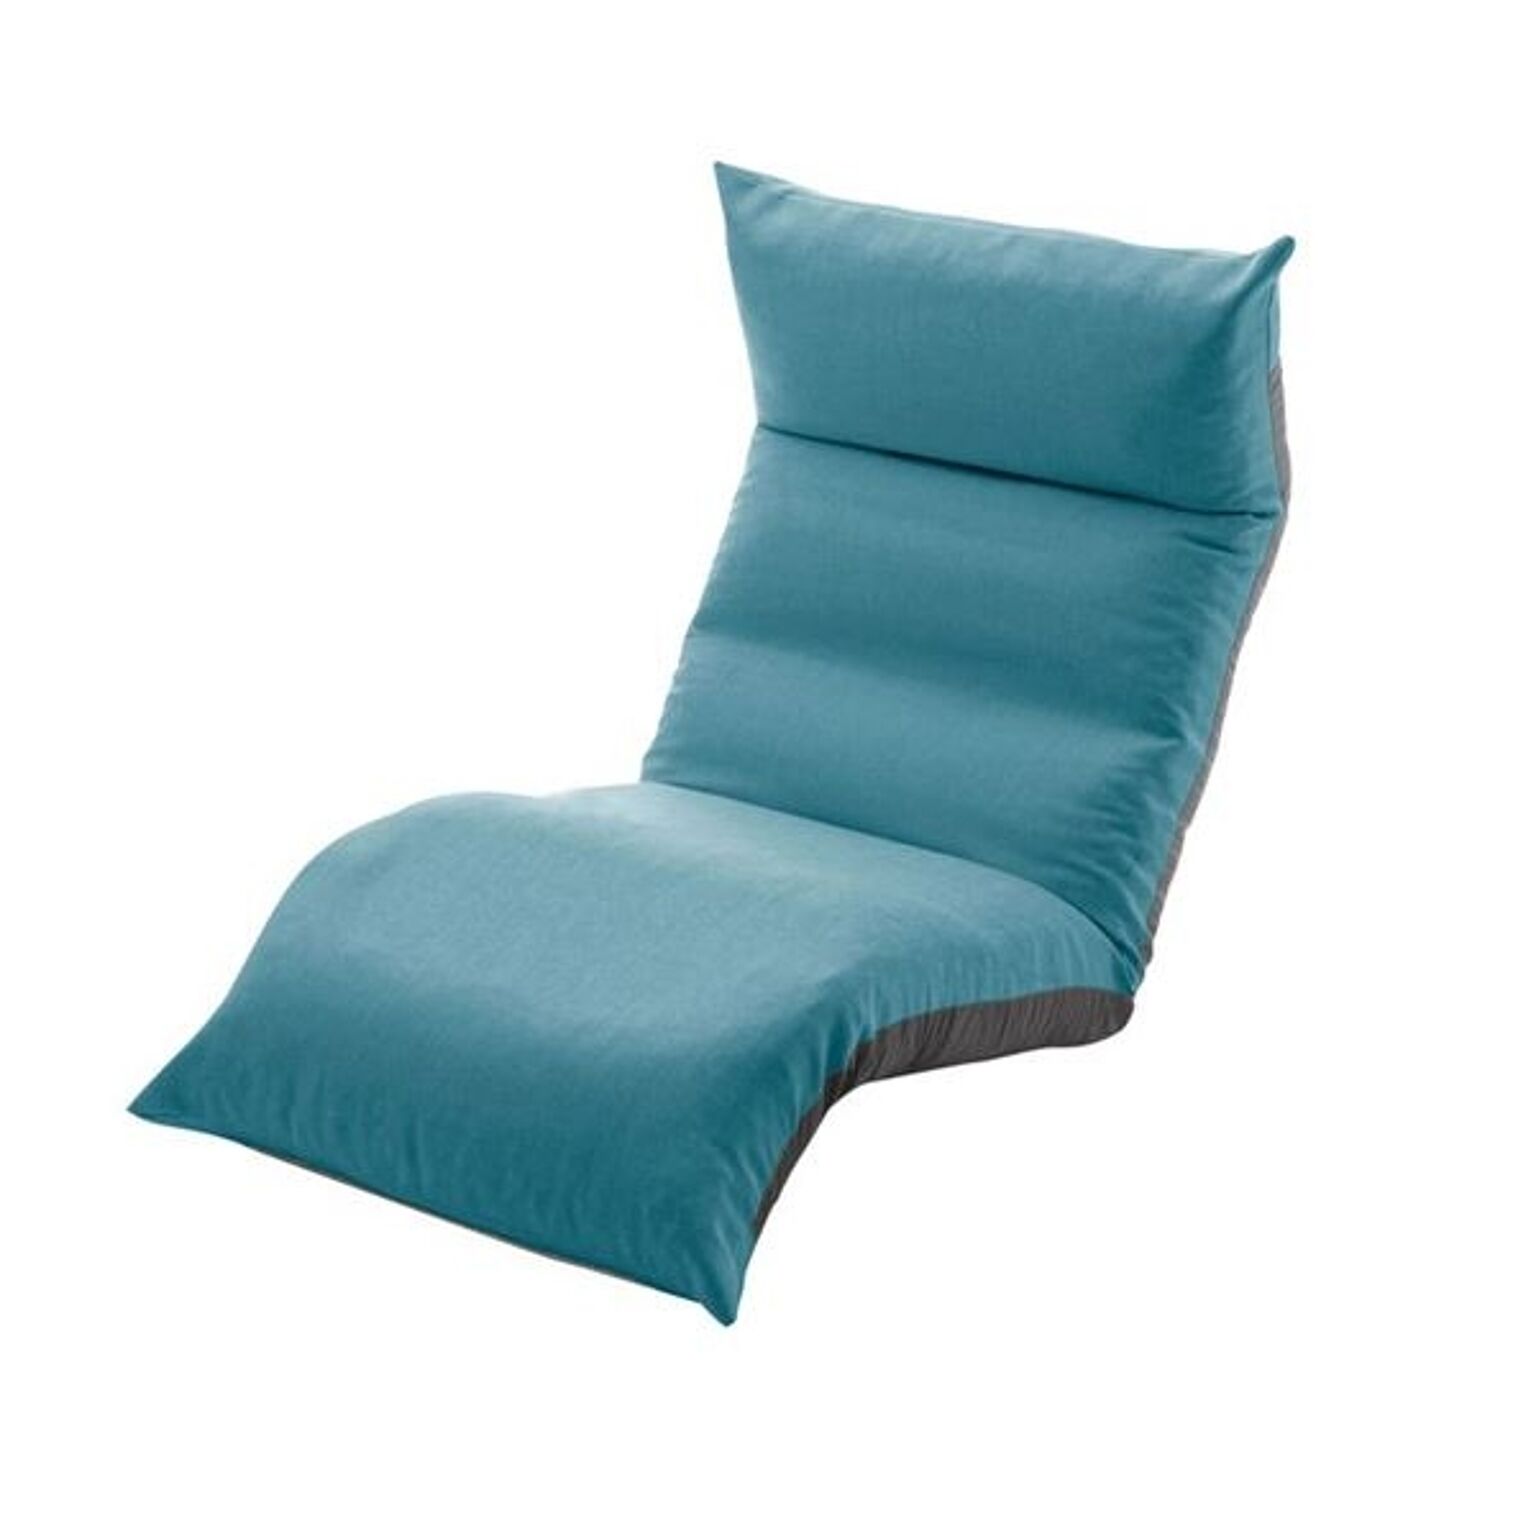 リクライニング フロアチェア/座椅子 【ターコイズブルー】 幅54cm 日本製 折りたたみ収納可 スチールパイプ ウレタン【代引不可】